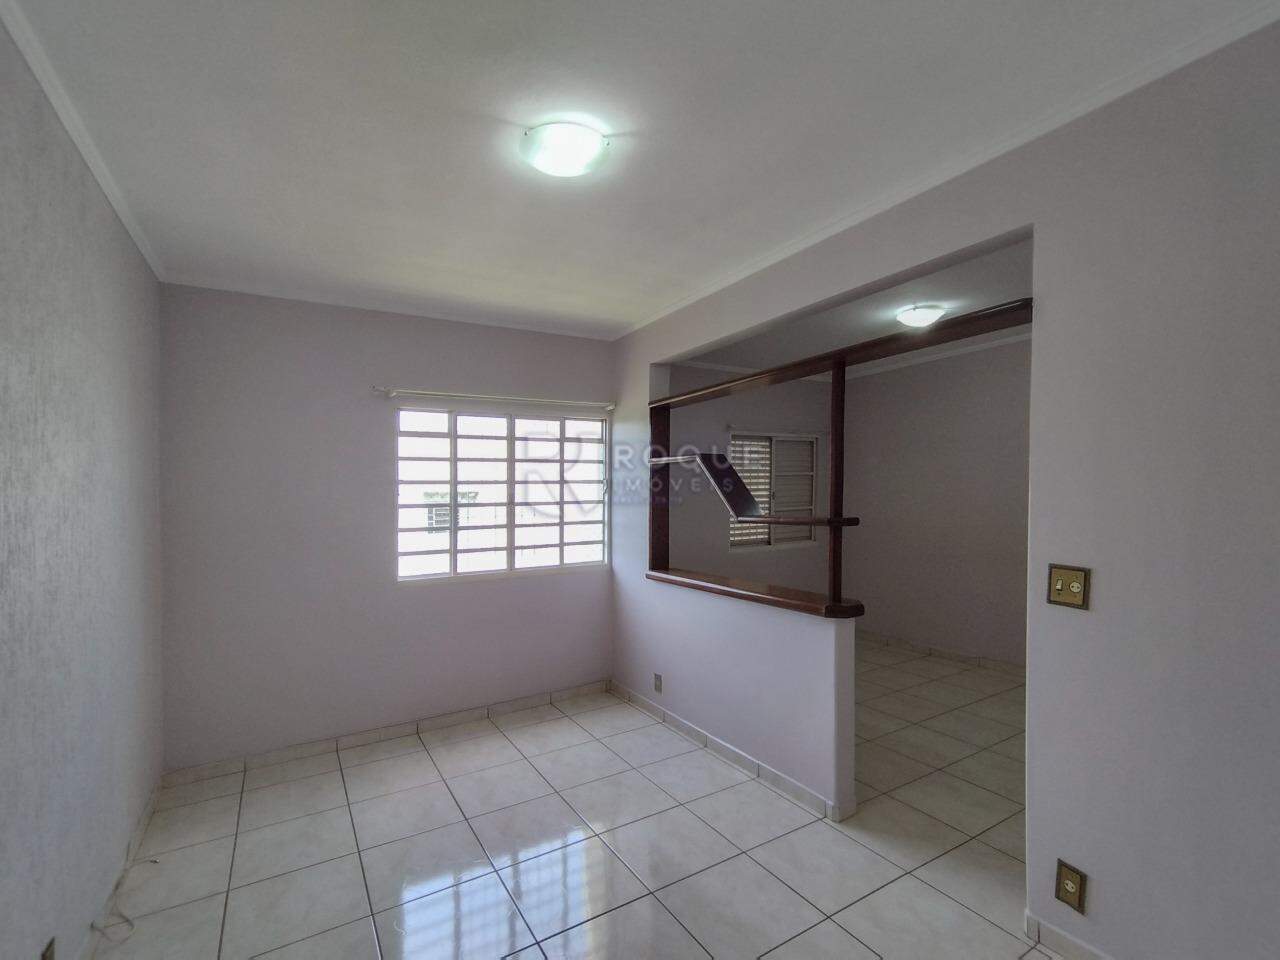 Apartamento para aluguel no bairro Cidade Jardim: Sala 